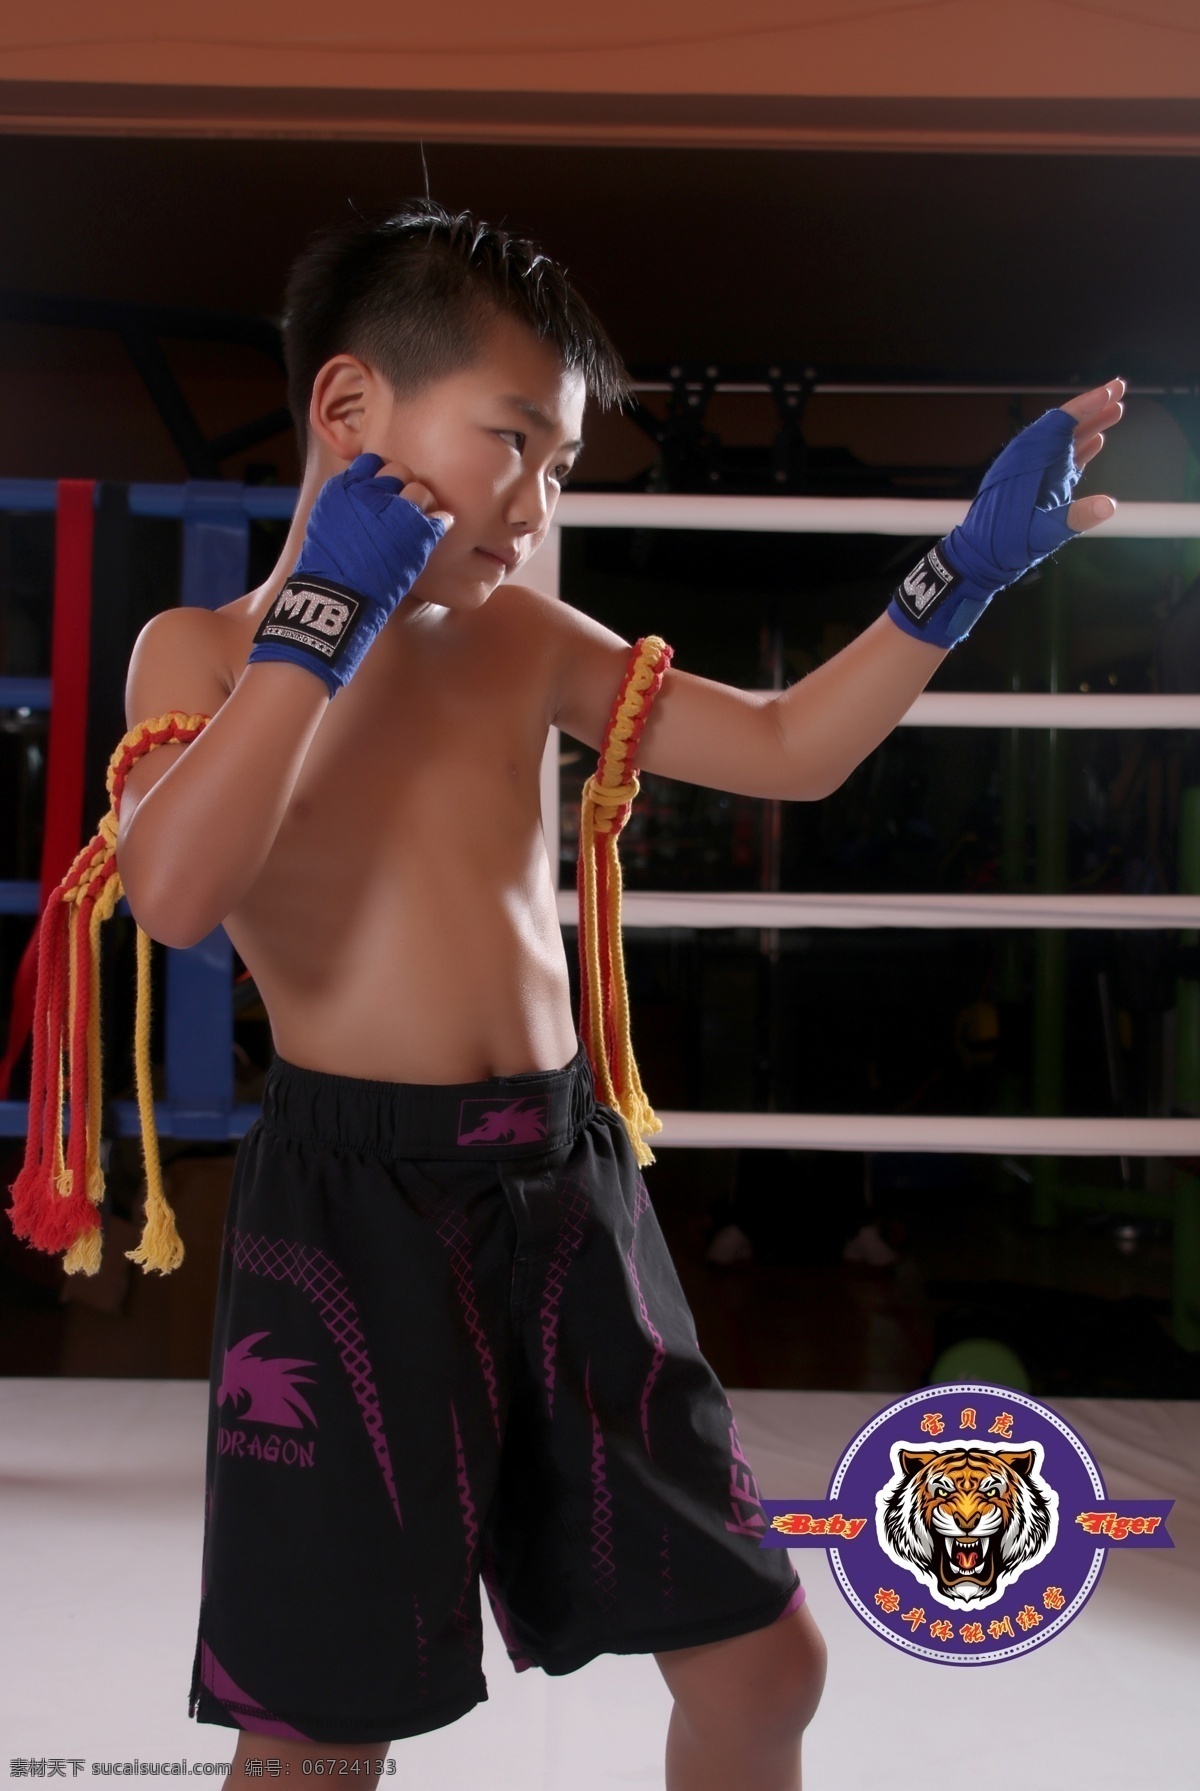 儿童格斗 泰拳 搏击 mma 儿童体适能 baby tiger 格斗 体能 文化艺术 体育运动